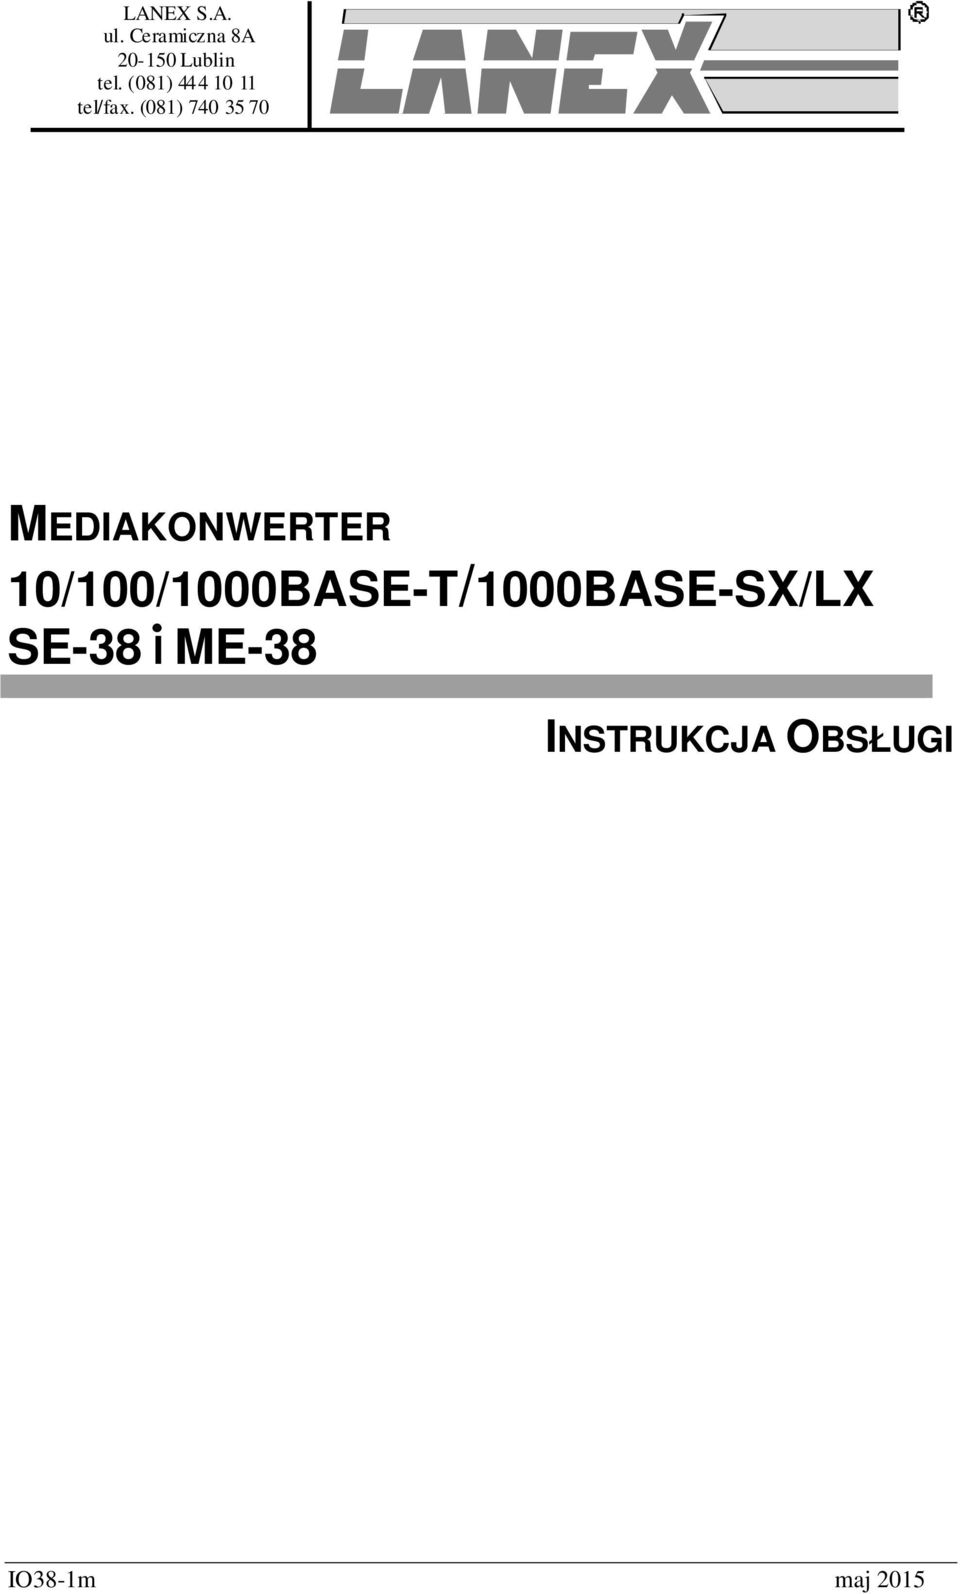 (081) 444 10 11 tel/fax.